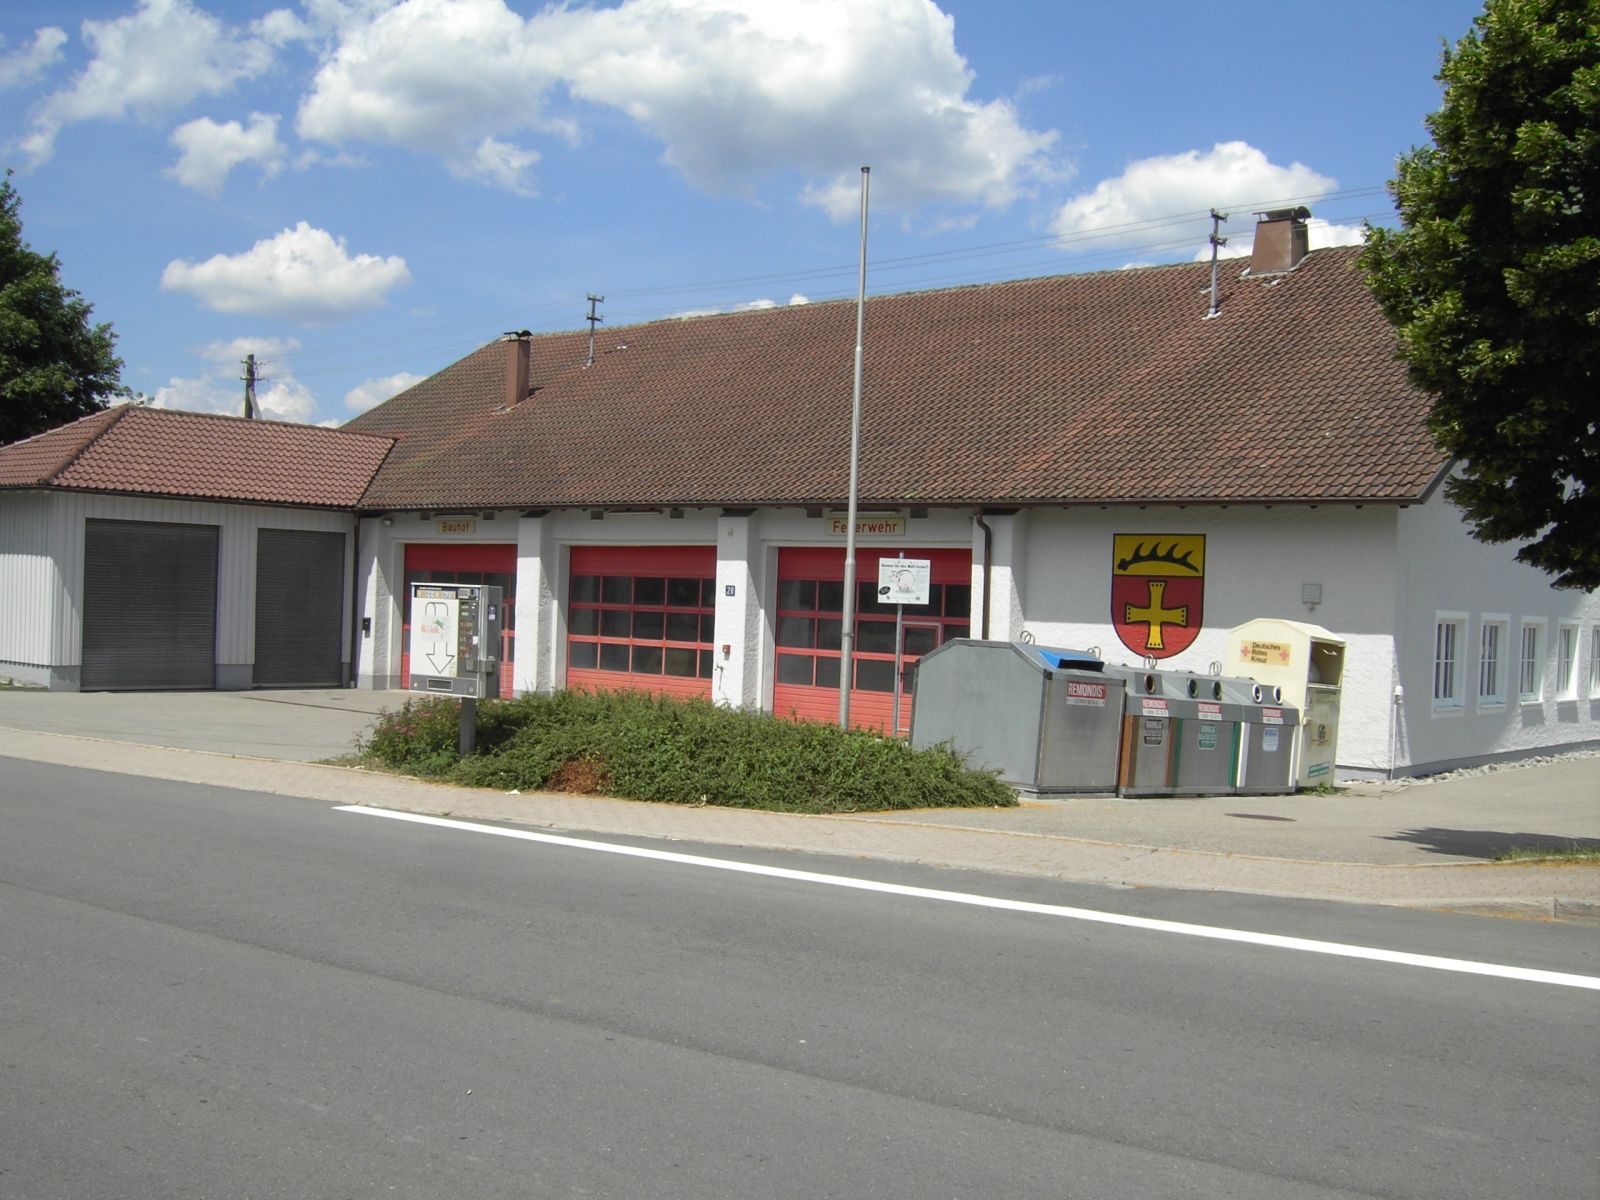  Bauhof und Feuerwehrhaus Schopfloch - das Bild wird mit einem Klick vergrößert 